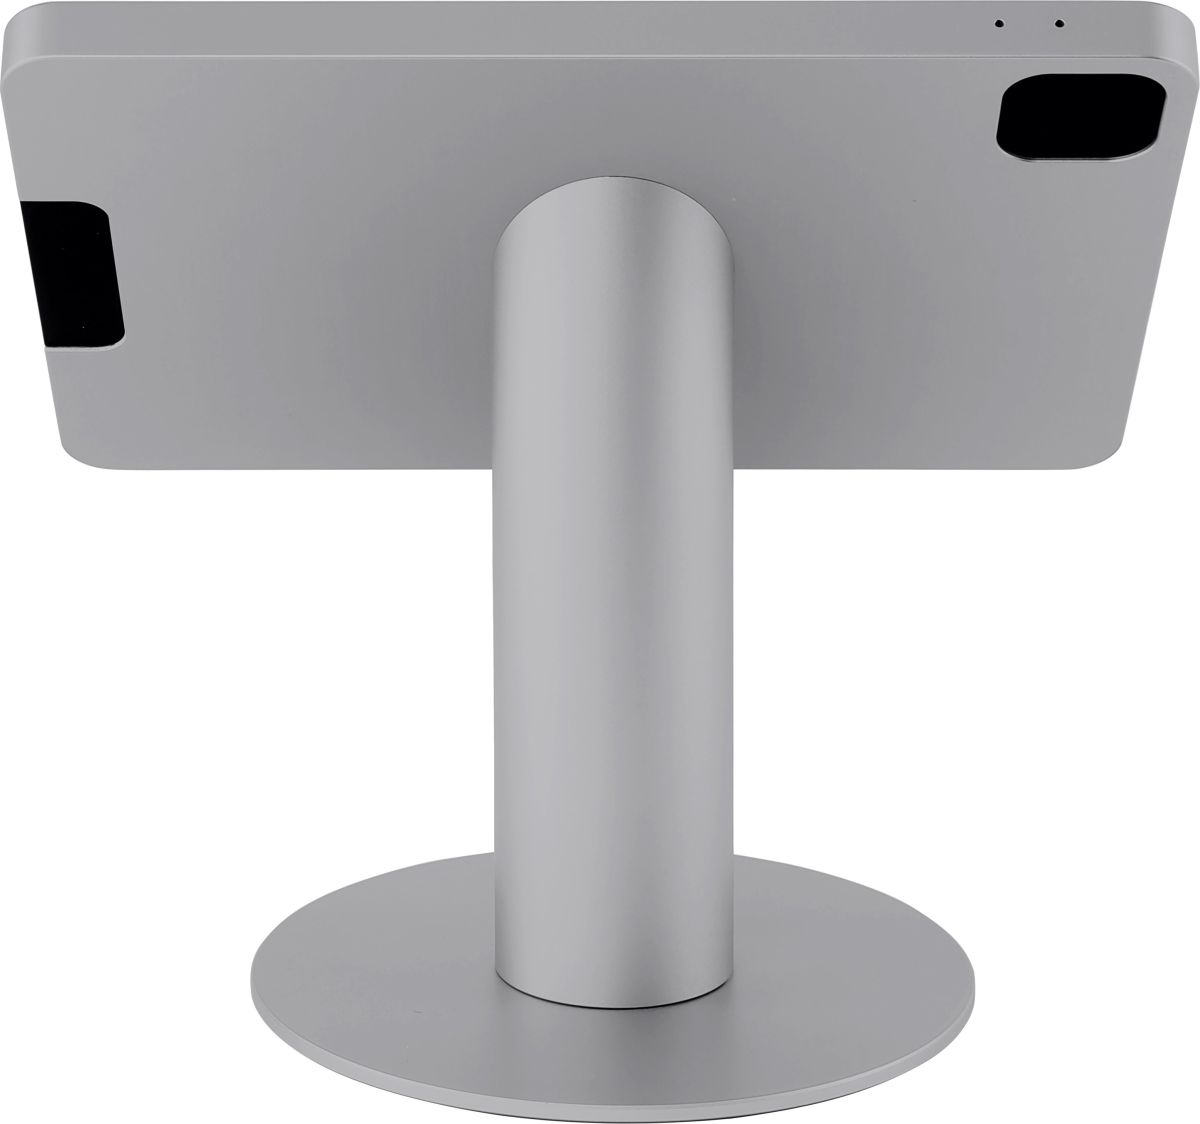 iPad Tischständer 432161